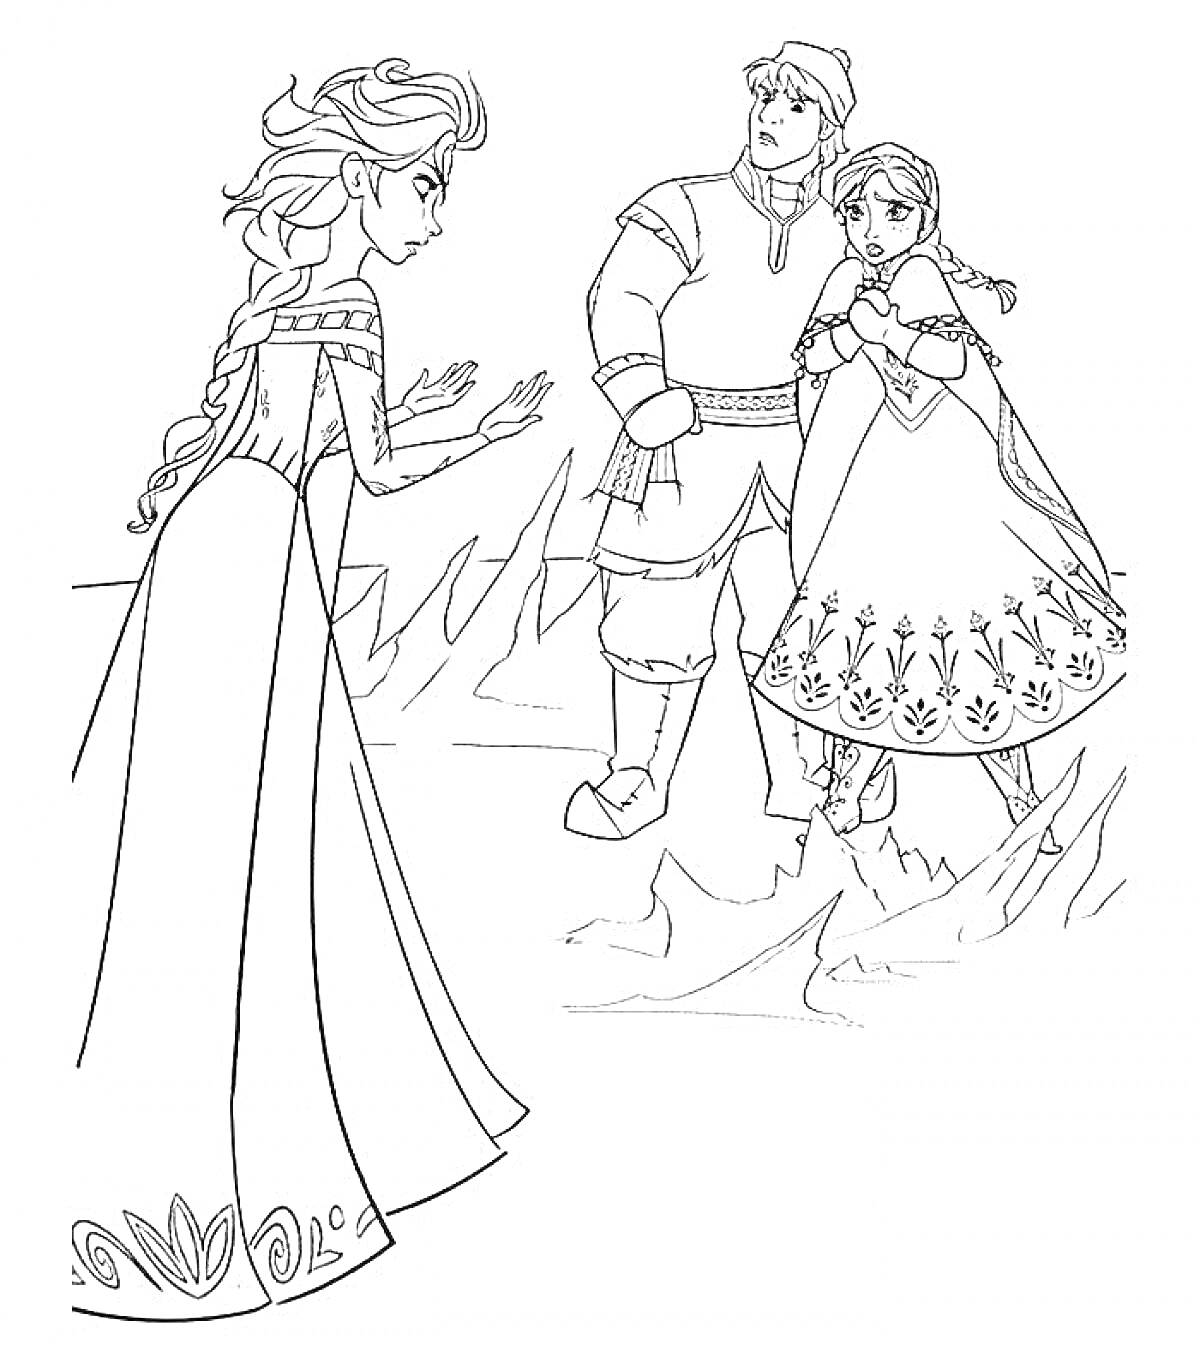 Раскраска Девушка с длинной косой, девушка с двумя косами и мужчина в зимней одежде стоят на льду